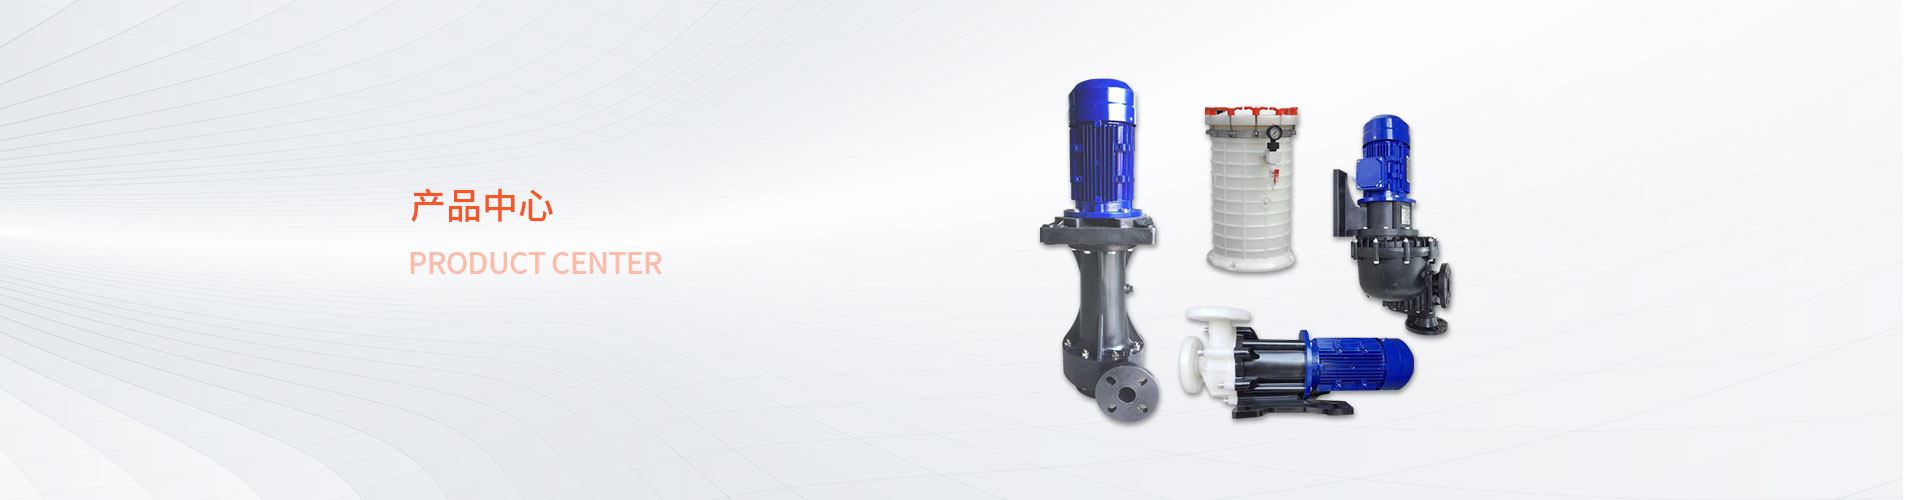 耐酸碱磁力泵-深圳市日泰工业设备有限公司